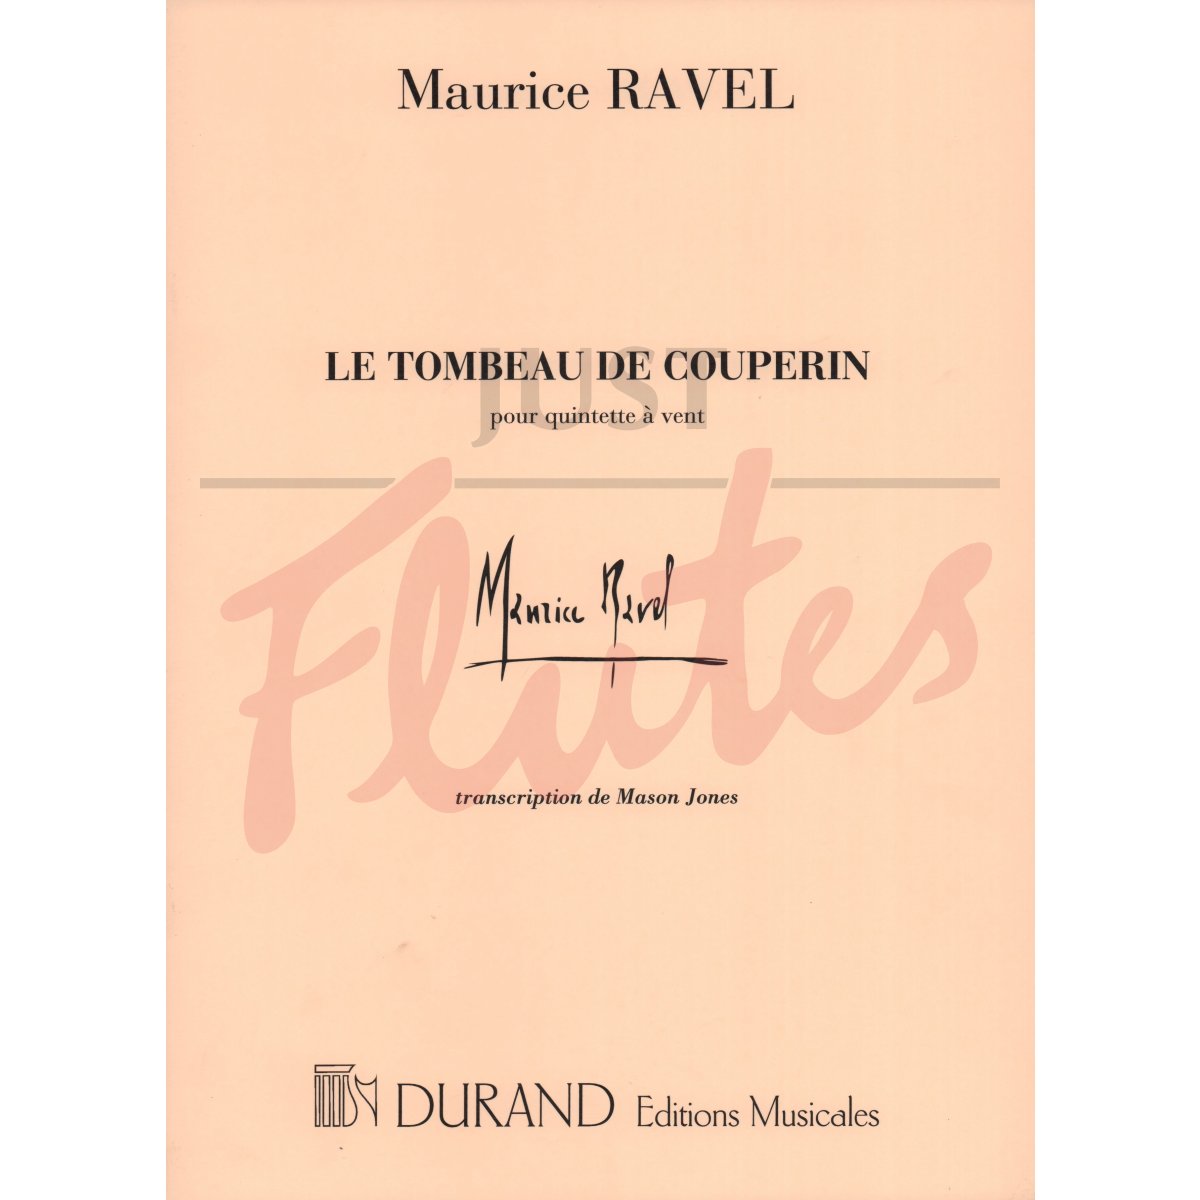 Le Tombeau de Couperin arranged for Wind Quintet